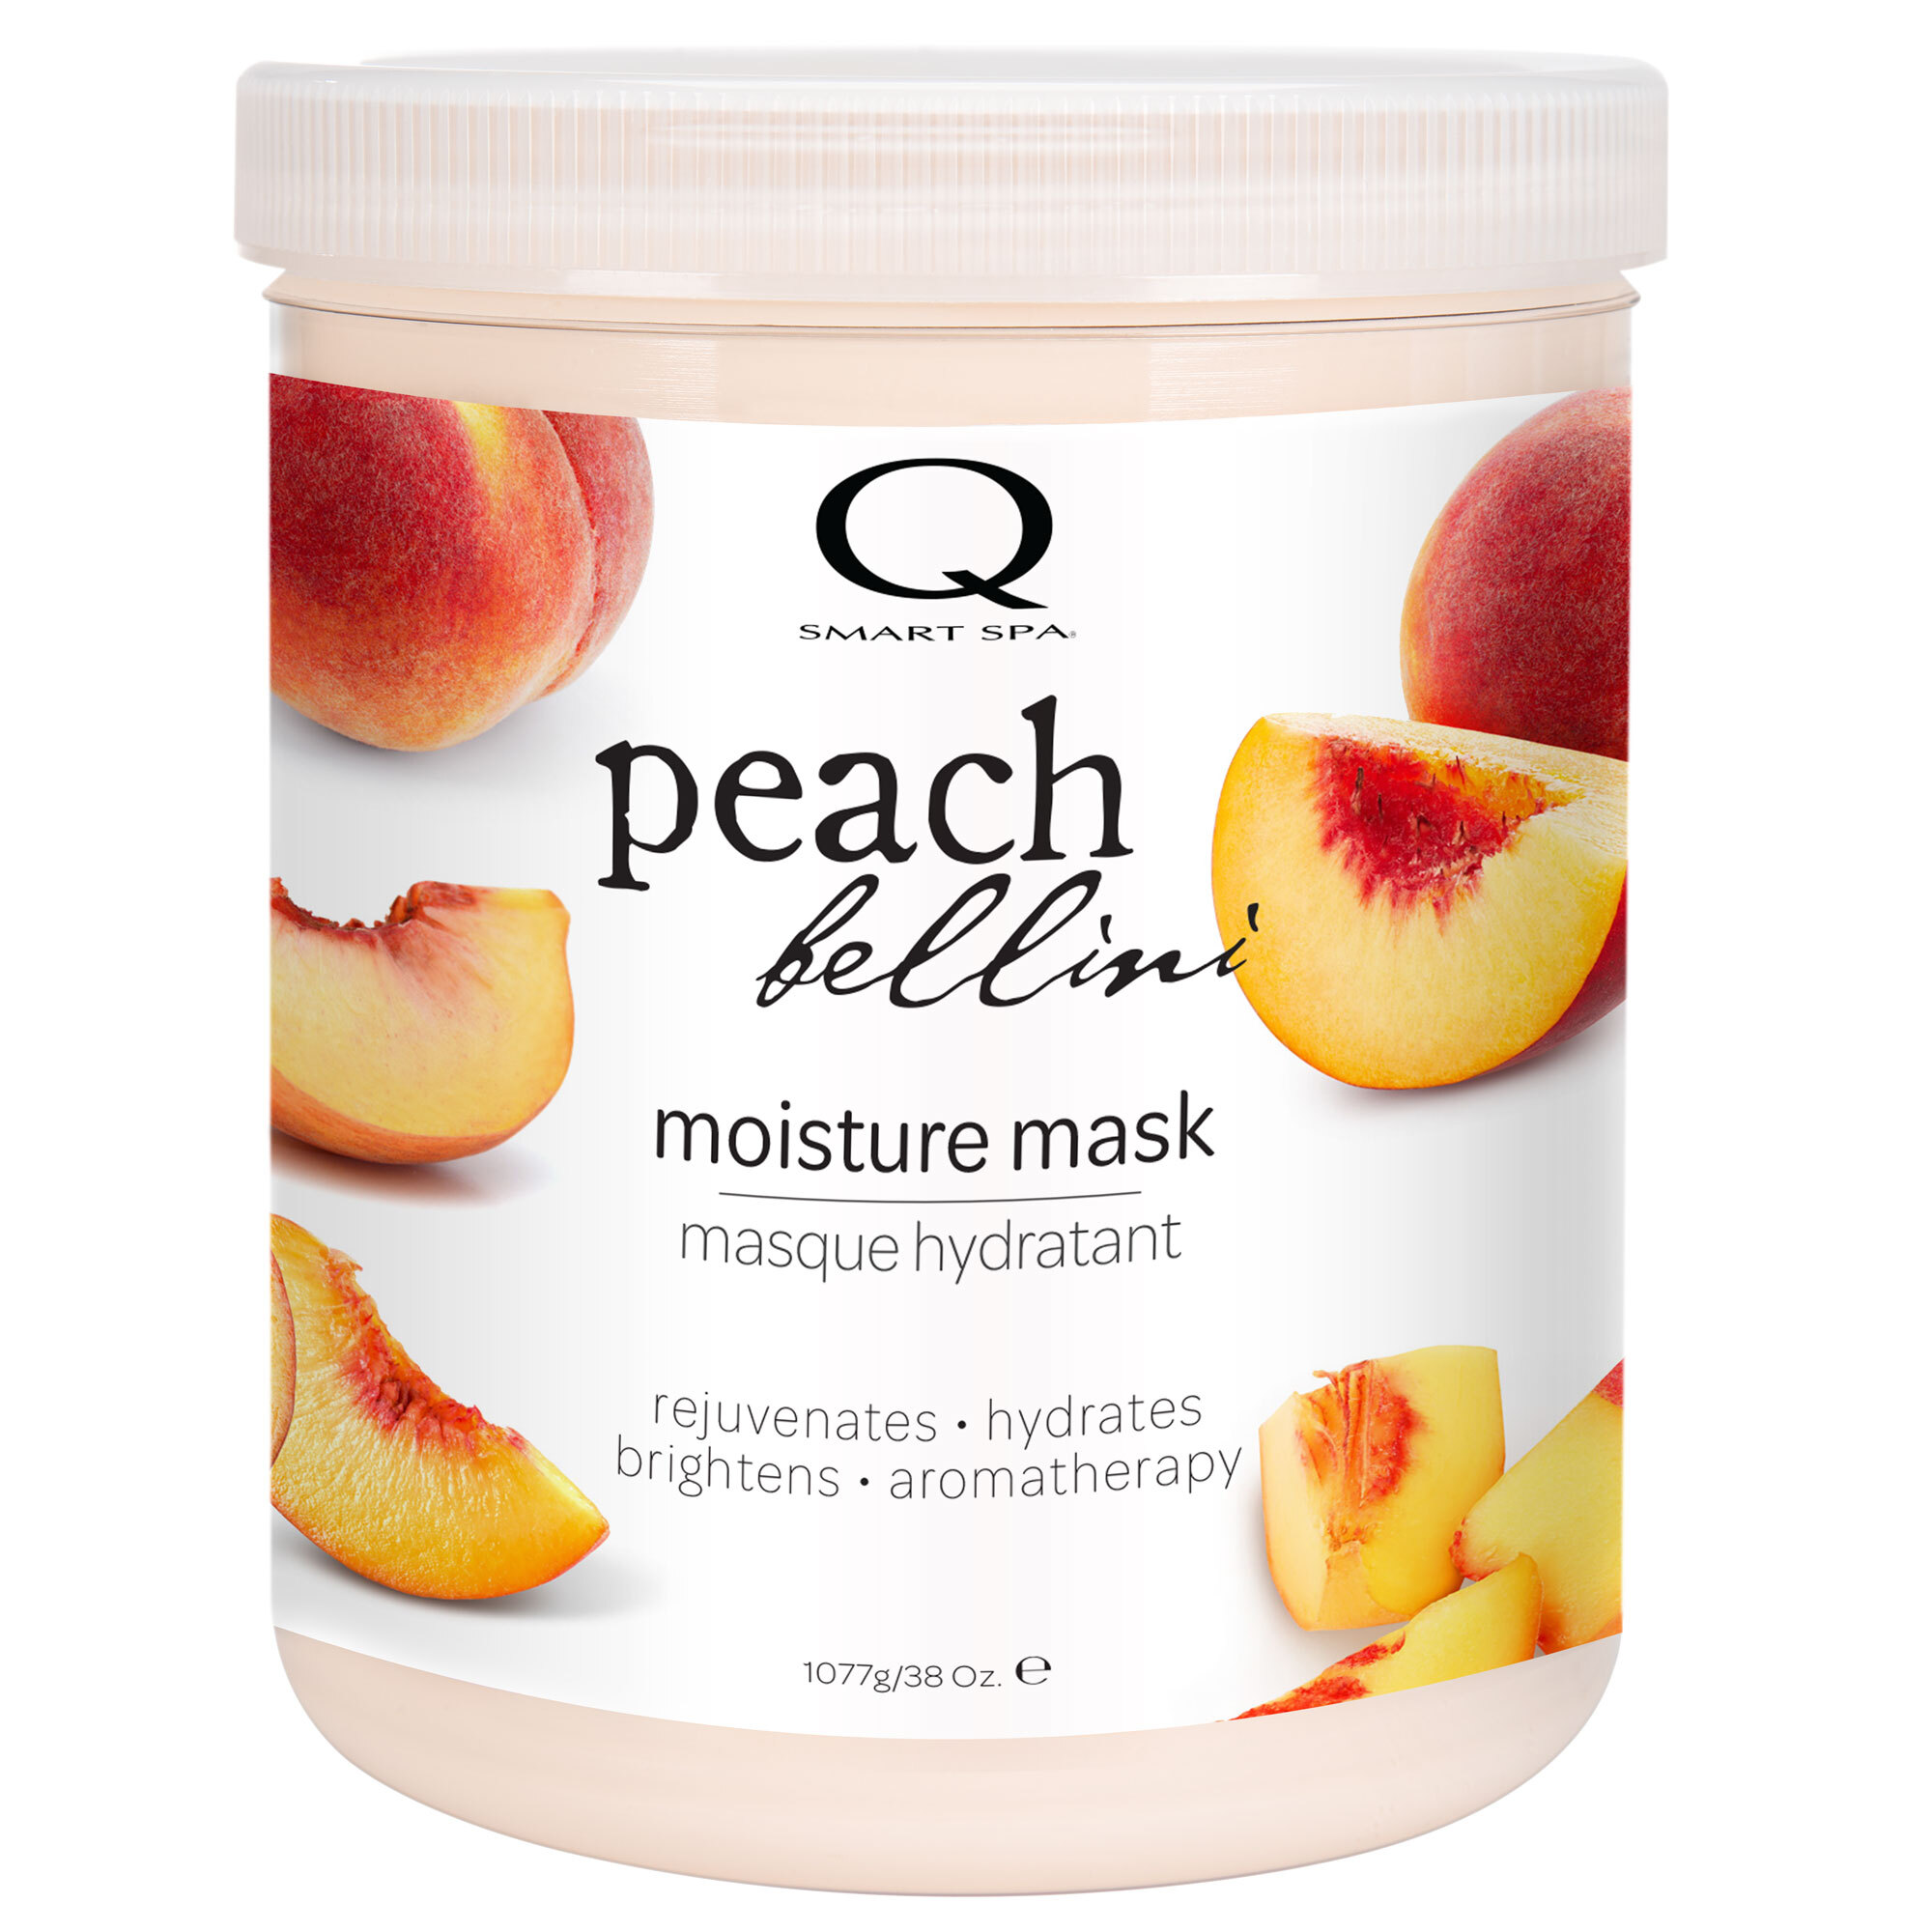 Qtica Smart Spa - Peach Bellini Moisture Mask